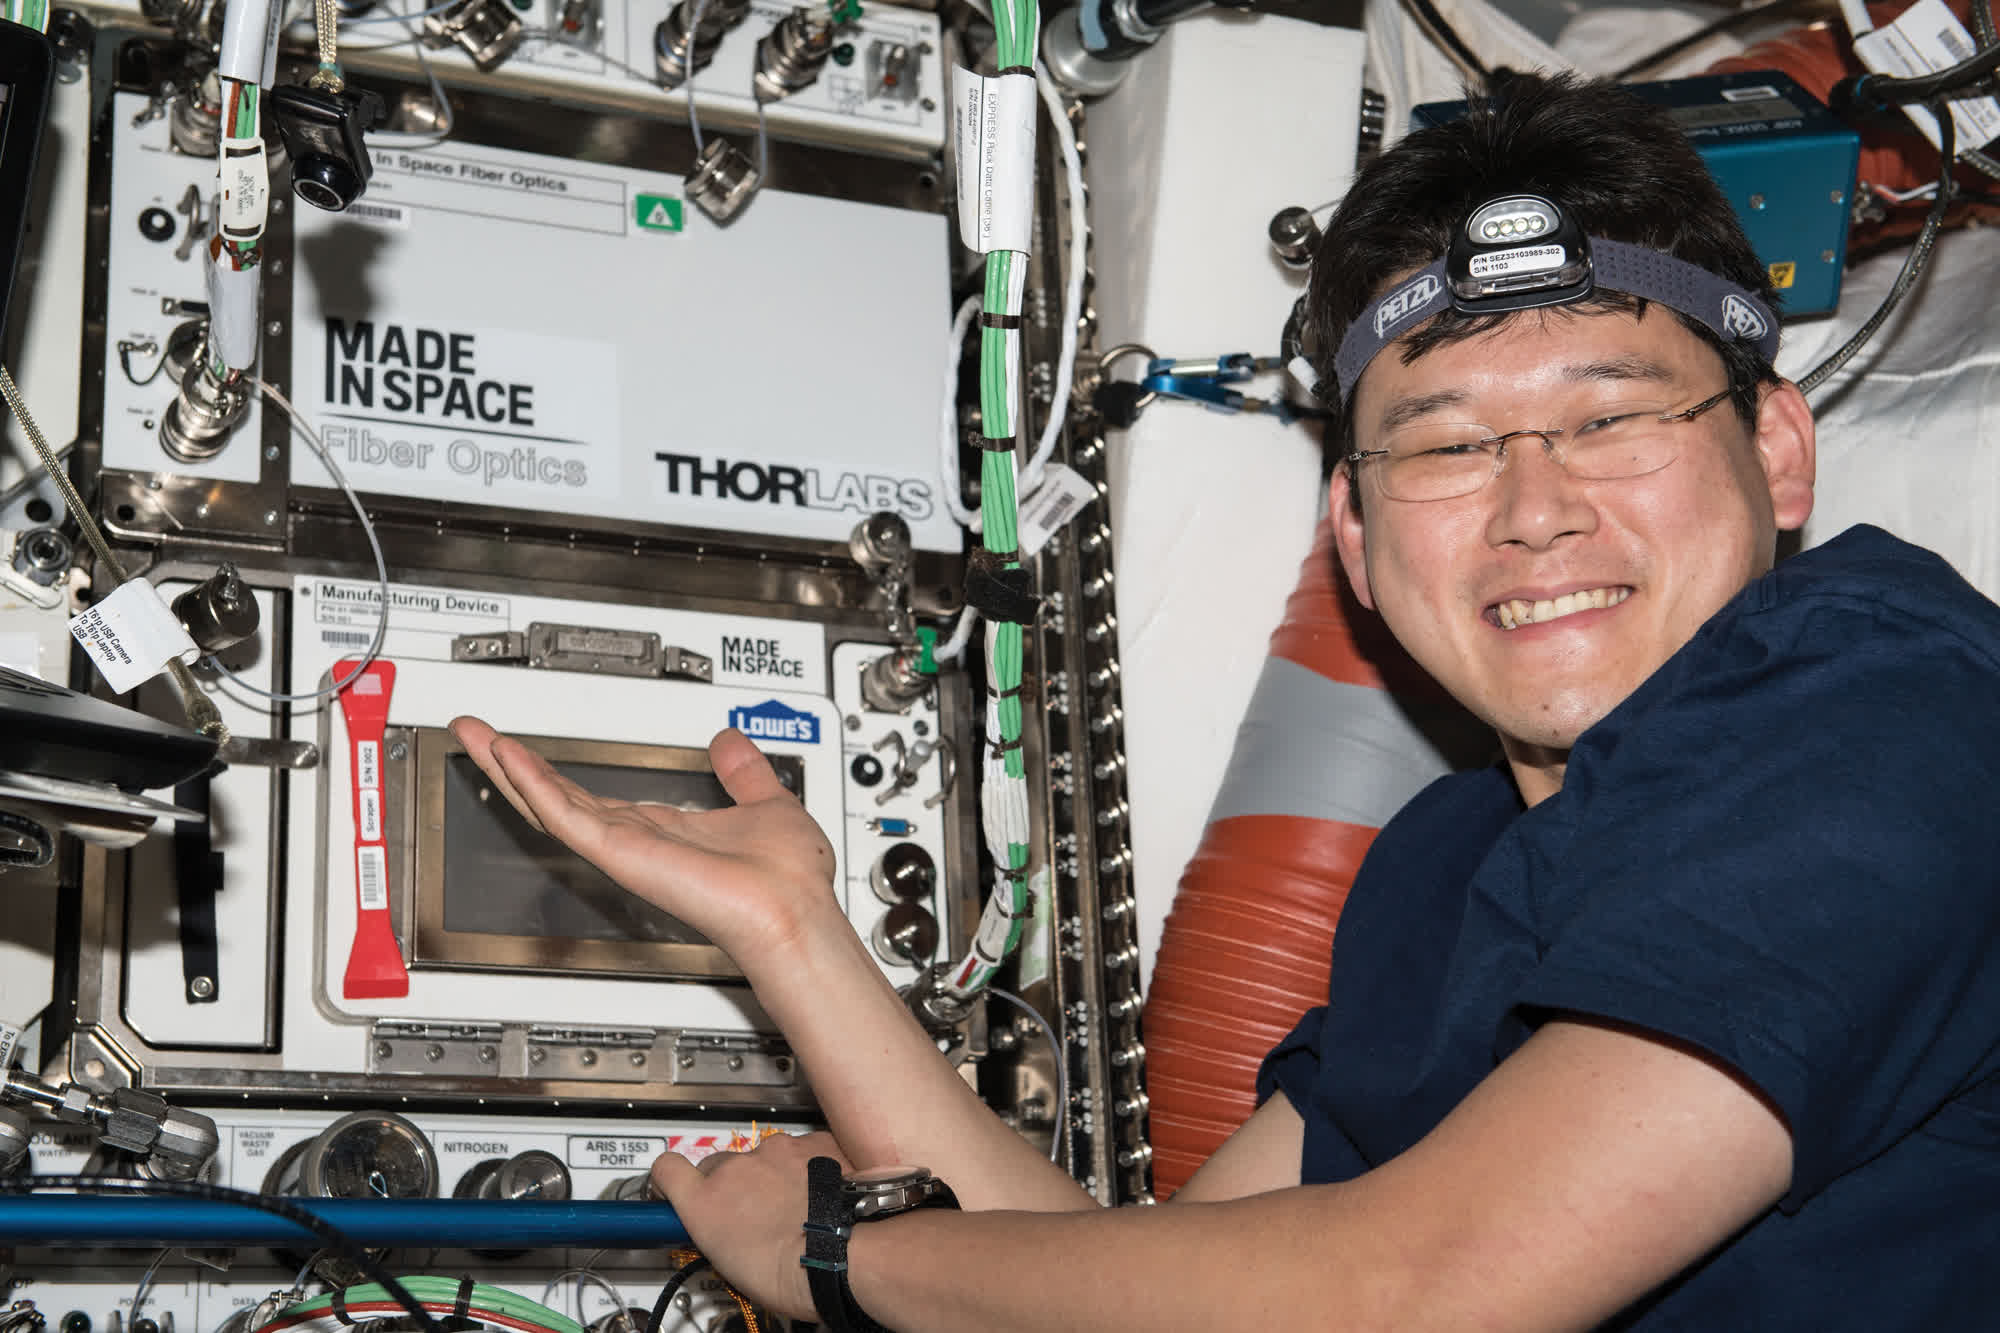 Los astronautas a bordo de la ISS fabrican kilómetros de fibra óptica técnicamente superior